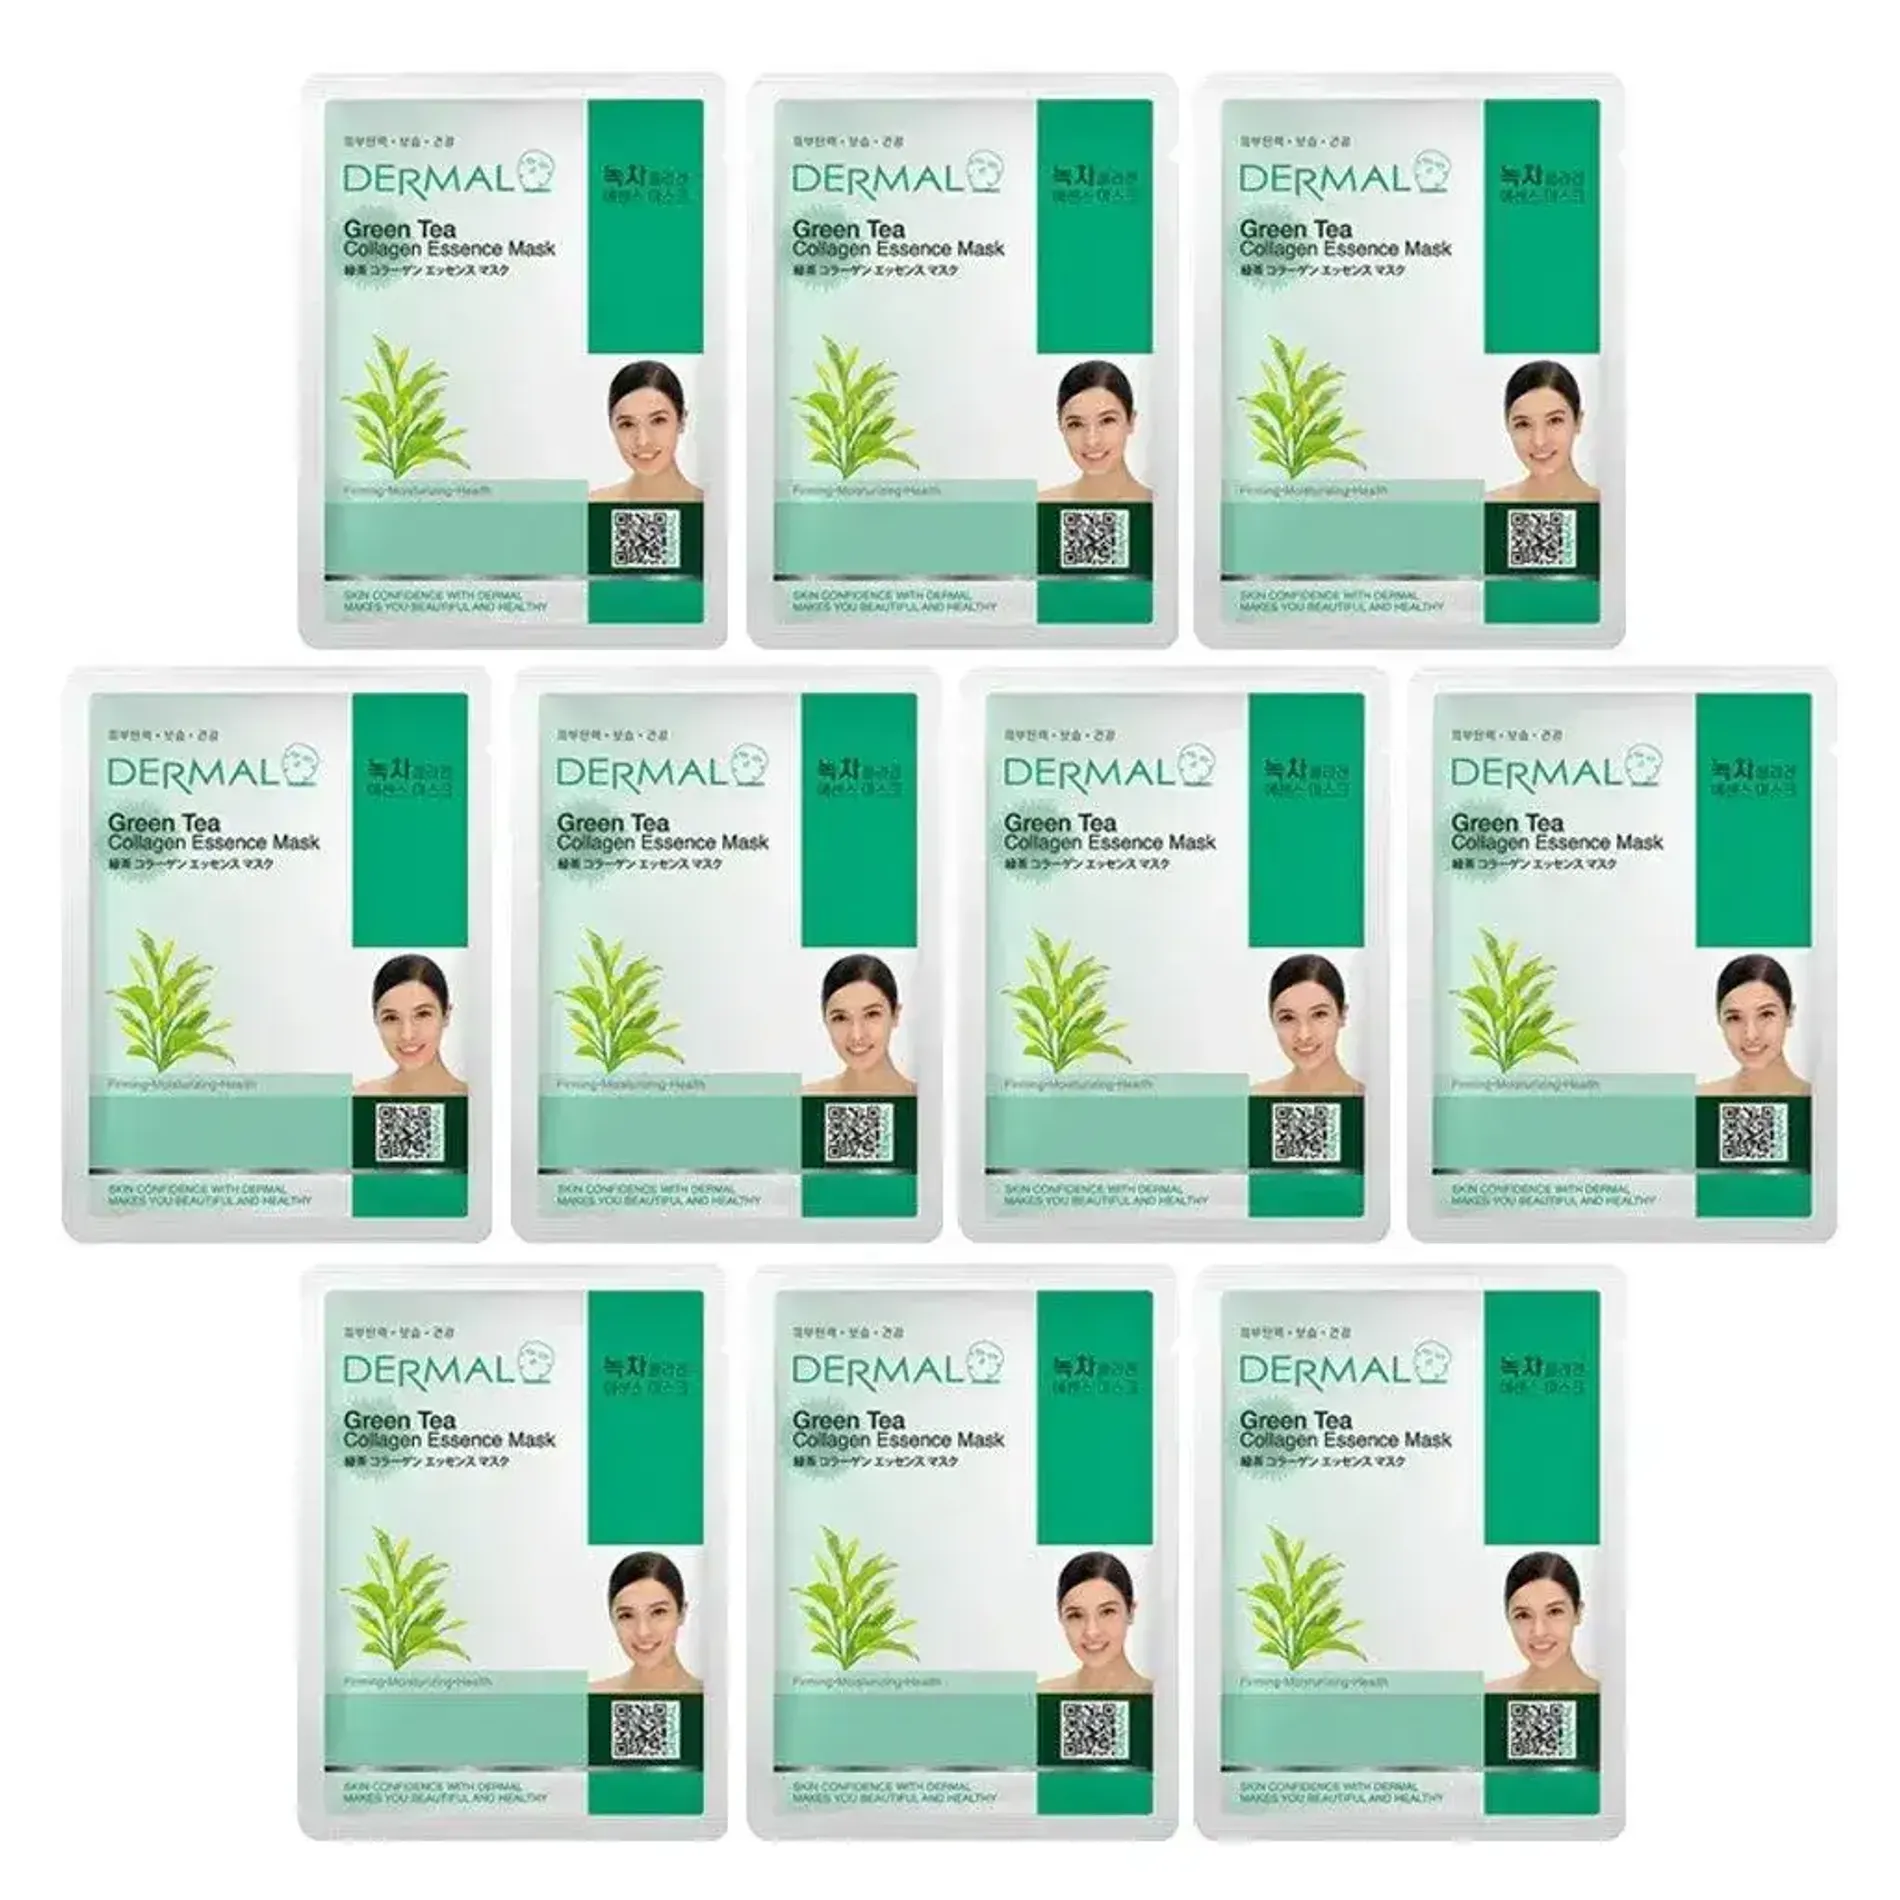 mat-na-collagen-che-xanh-dermal-green-tea-collagen-essence-mask-23g-2